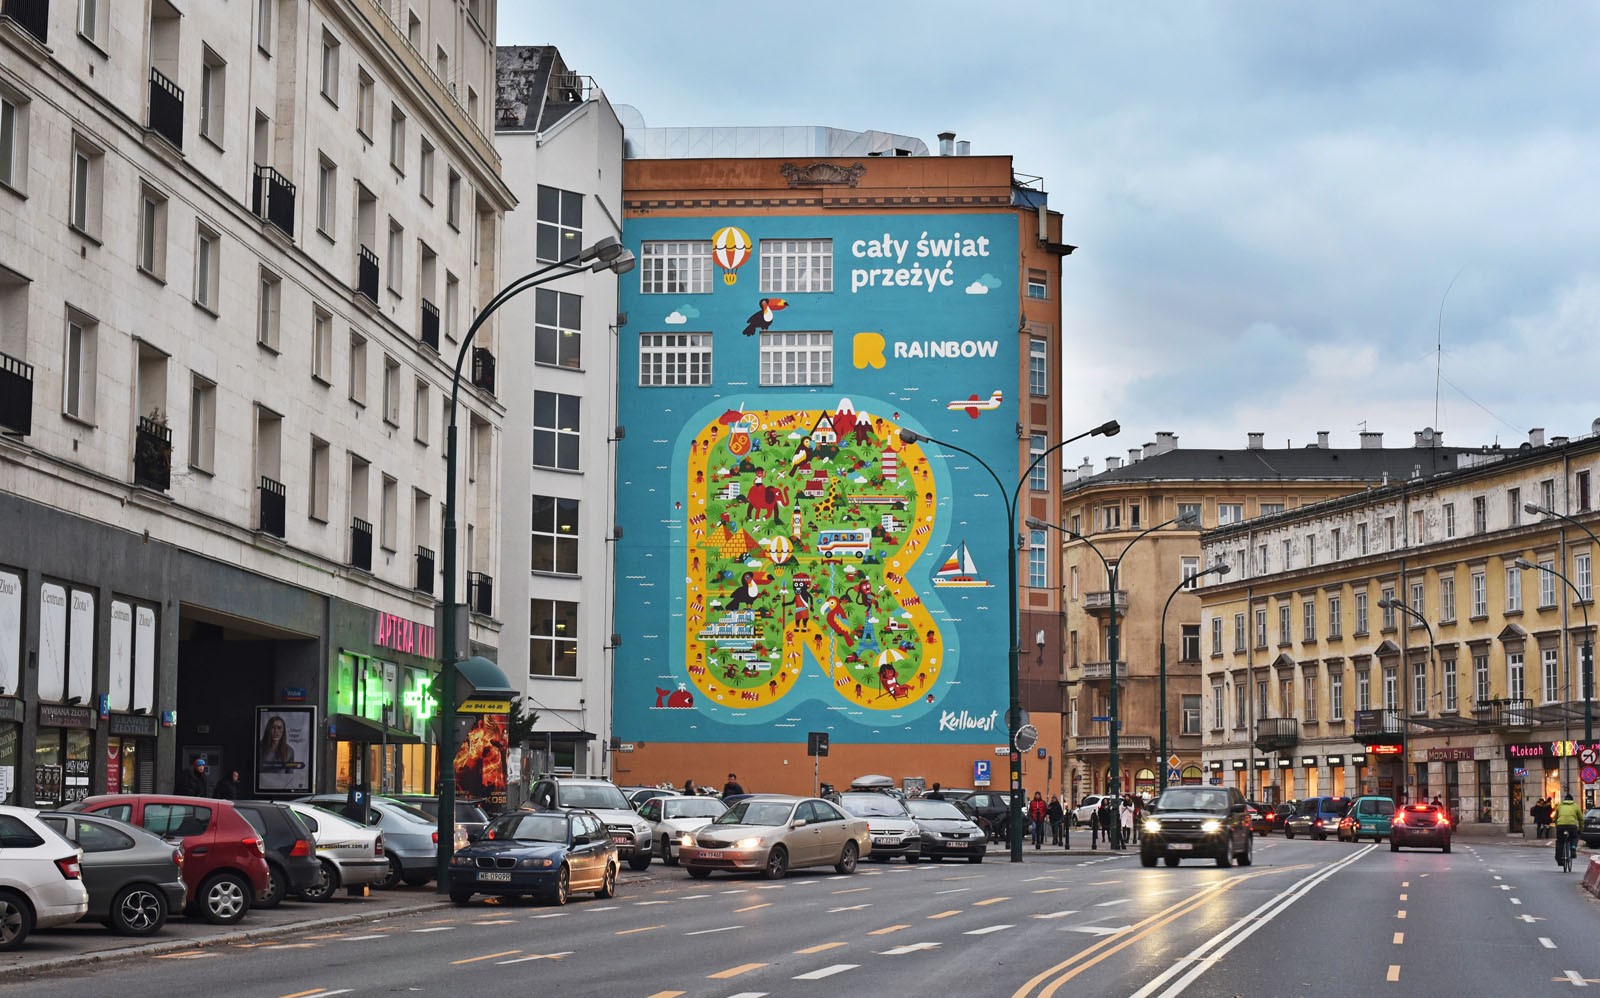 Mural reklamowy Rainbow w Warszawie - ul. Bracka - Dom Towarowy Braci Jabłkowskich | Kampania dla biura podróży Rainbow | Portfolio